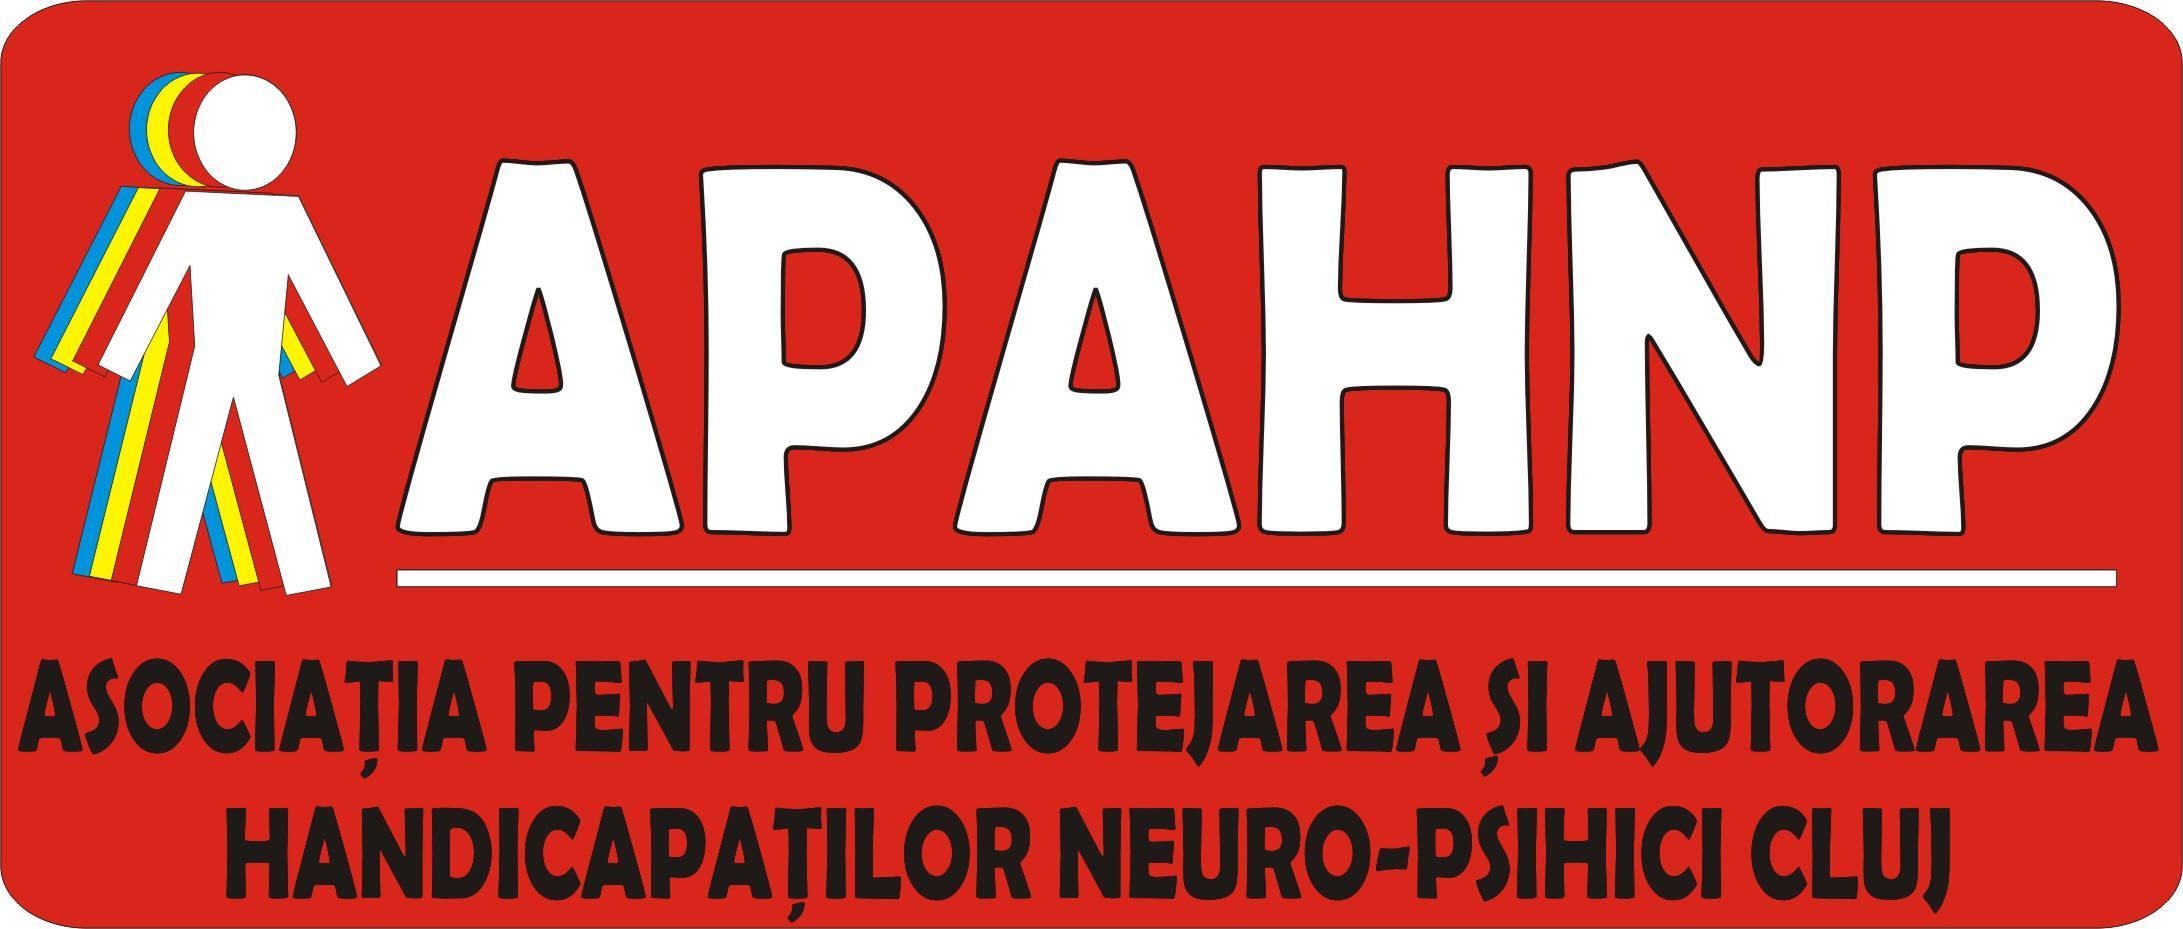 ASOCIATIA PENTRU PROTEJAREA SI AJUTORAREA HANDICAPATILOR NEURO-PSIHICI (APAHNP) logo